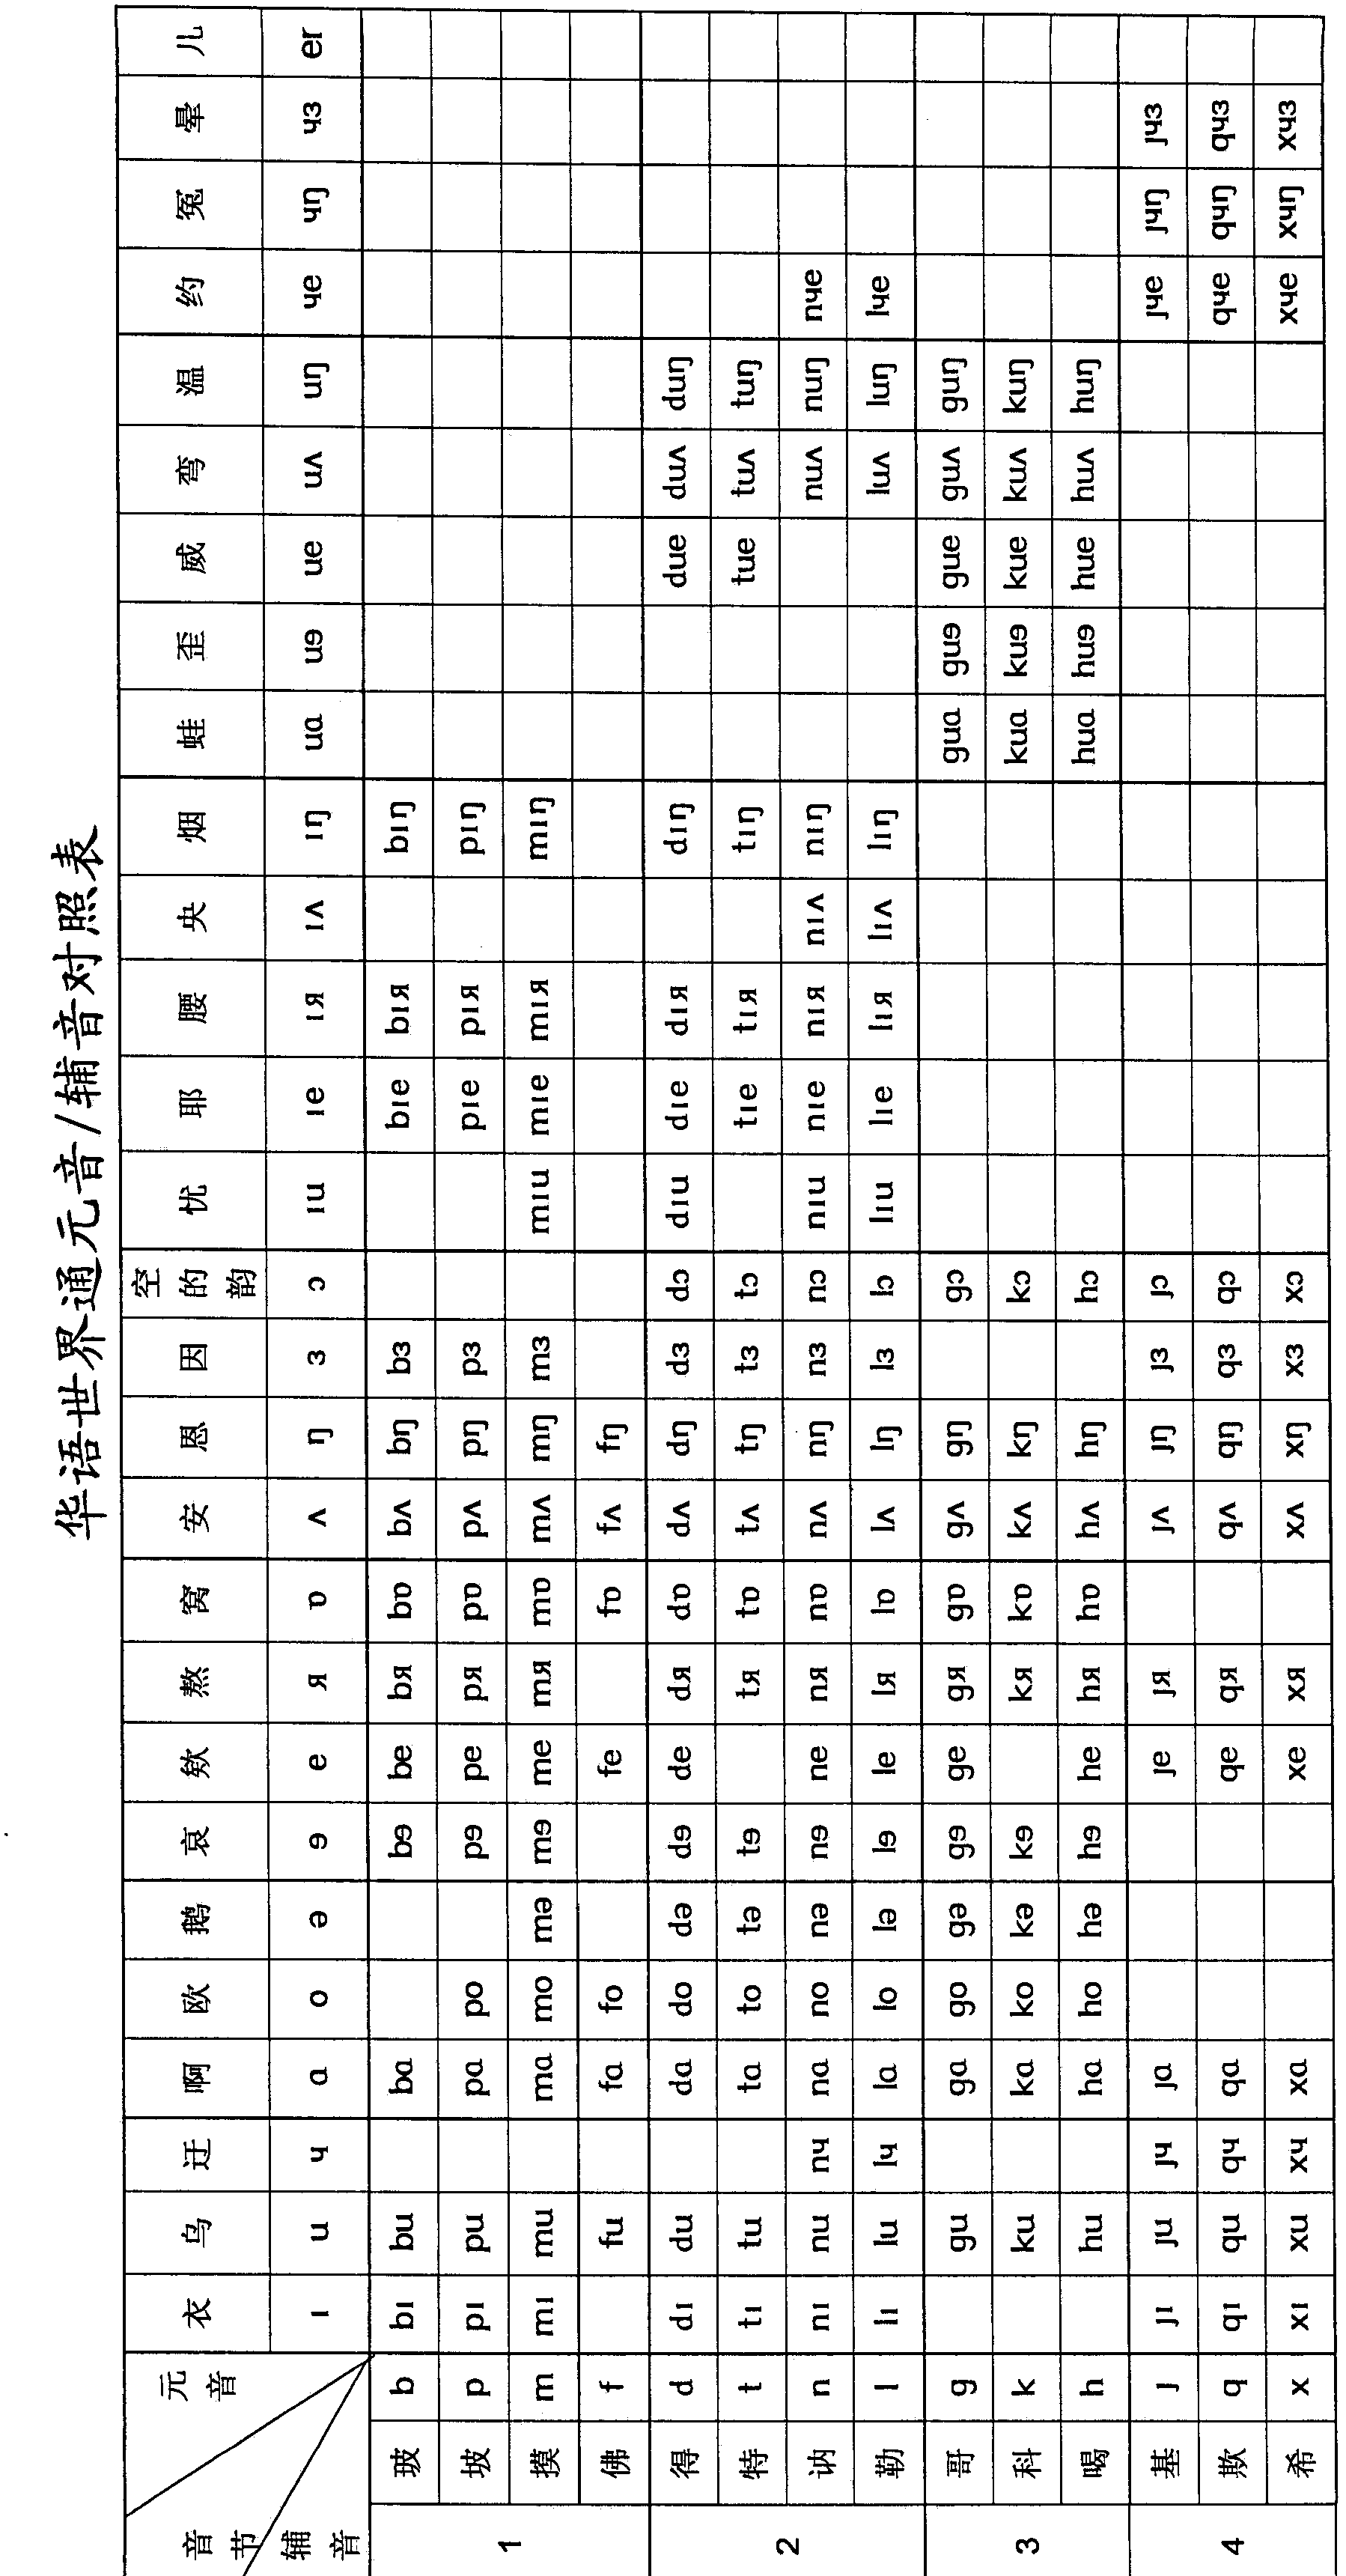 Pinyin character scheme